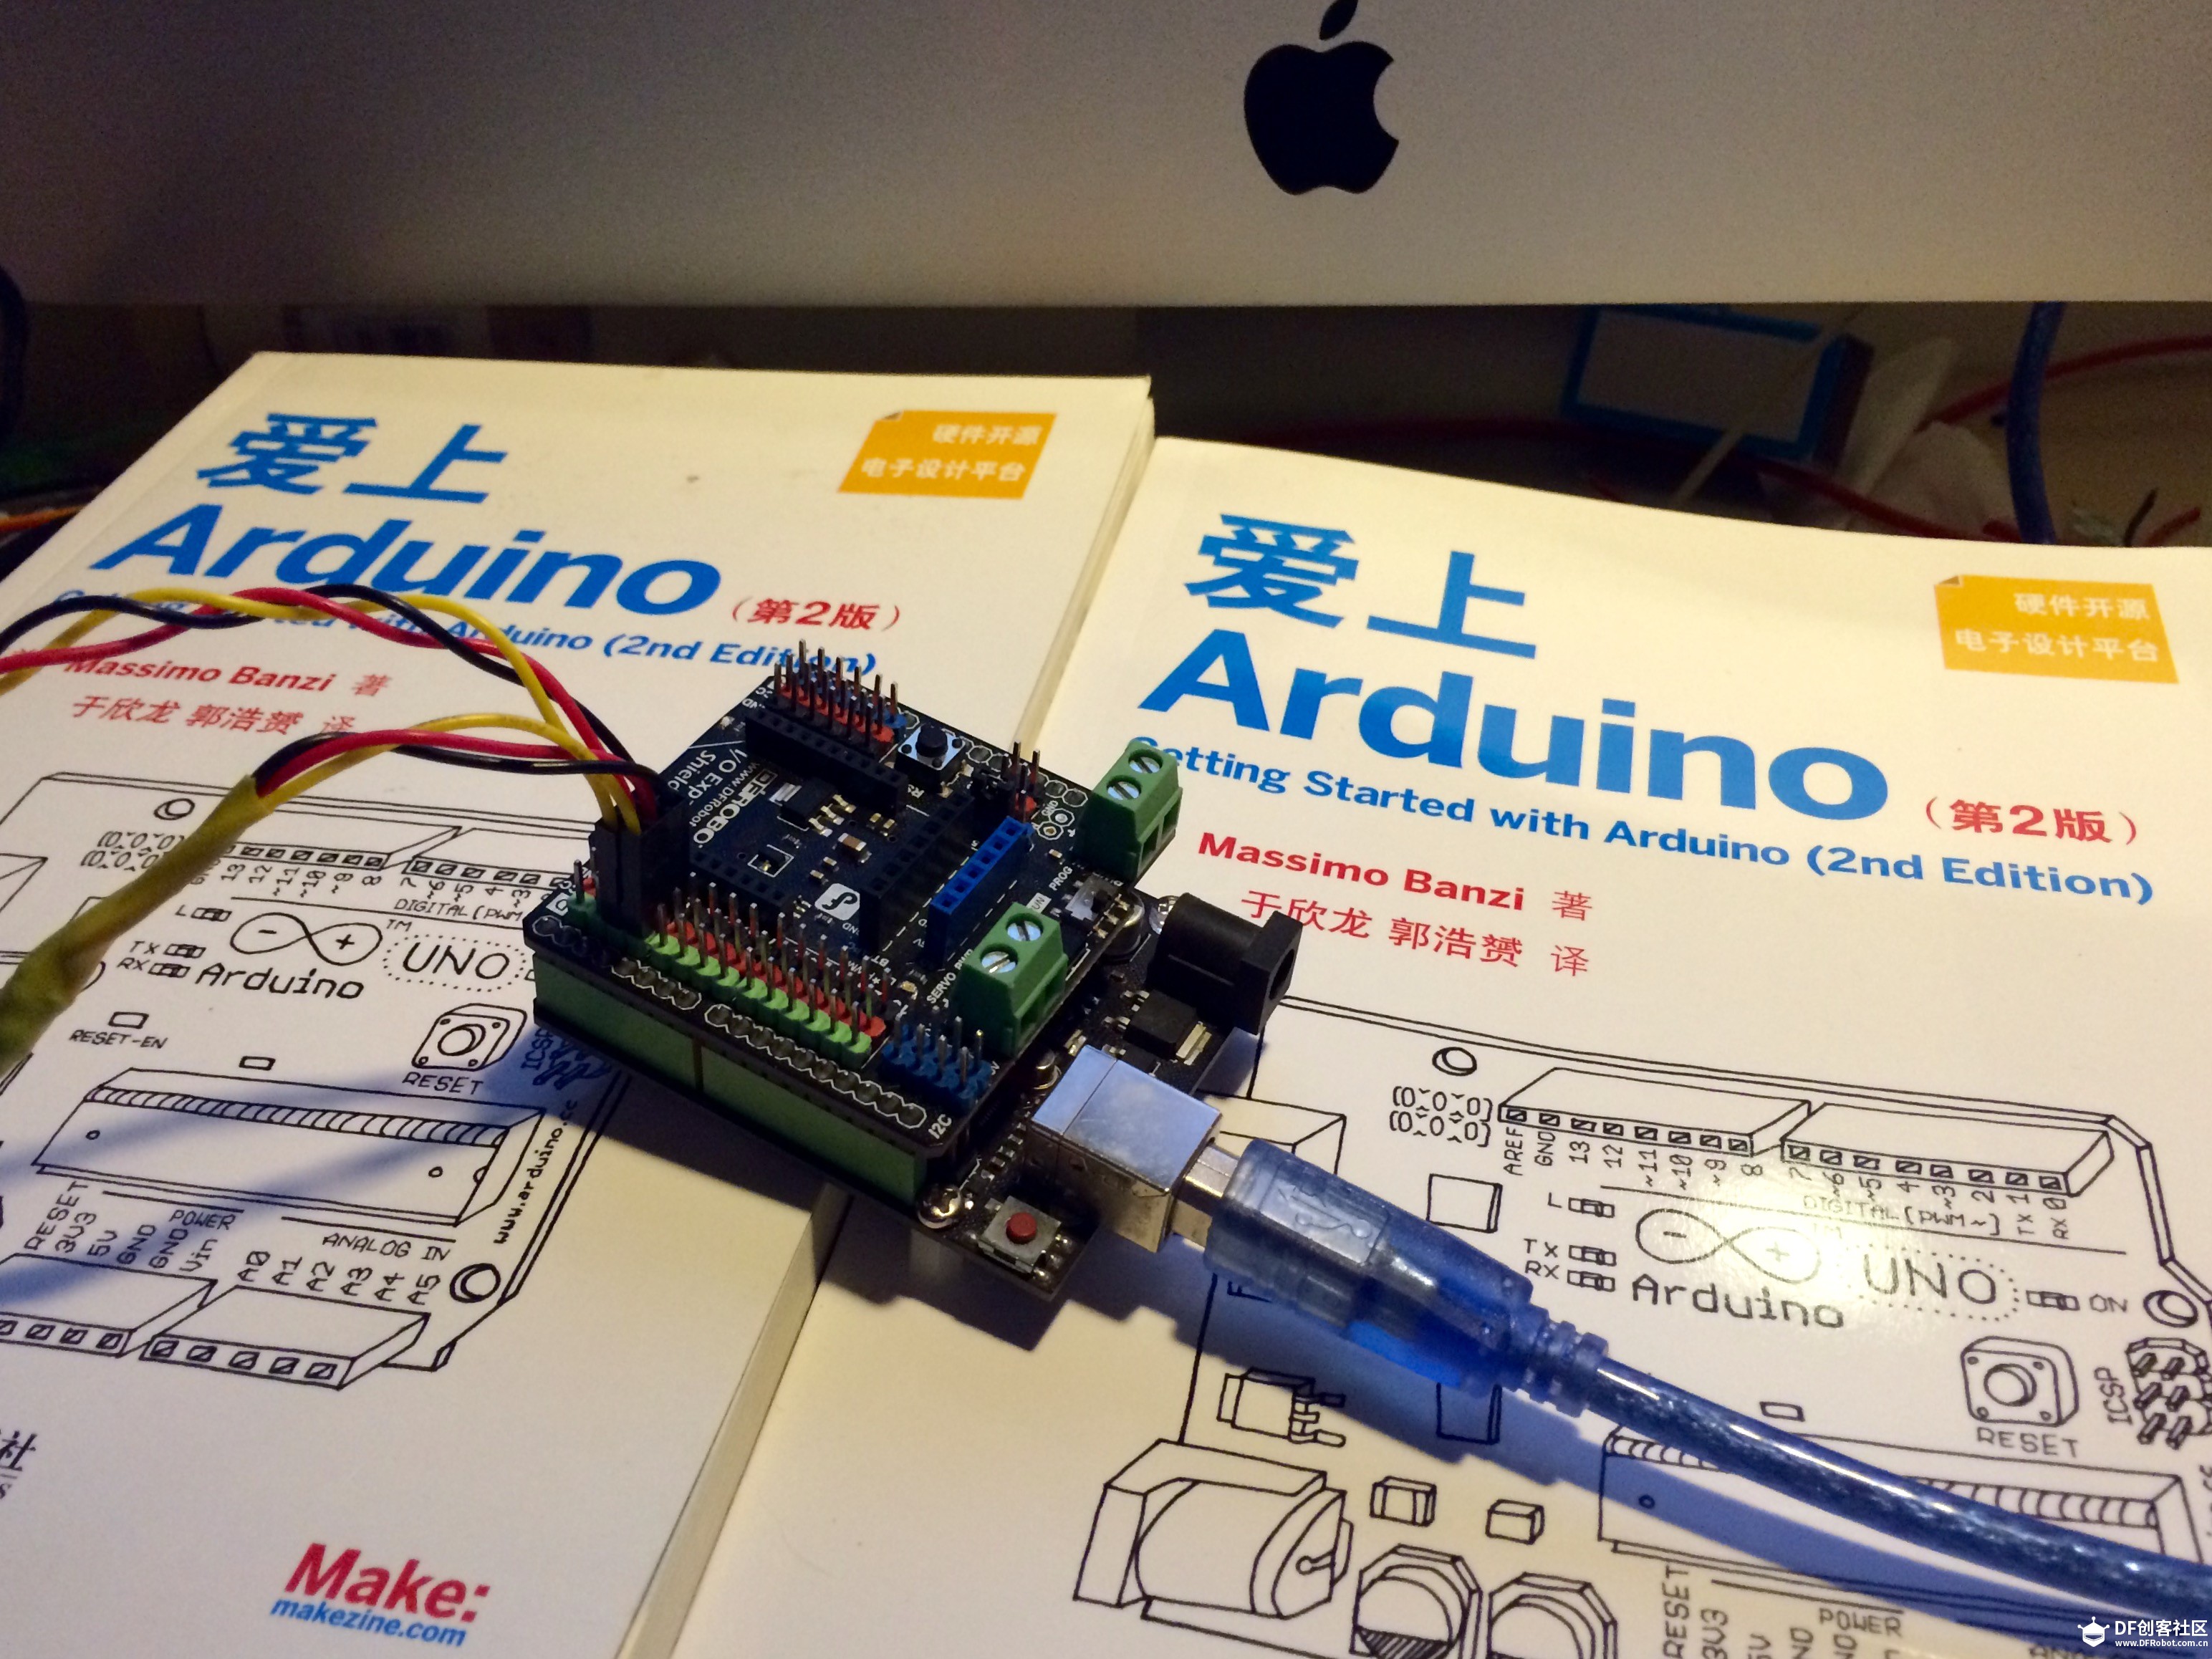 免费赠送两本《爱上Arduino》给需要的小伙伴[已送出]图1